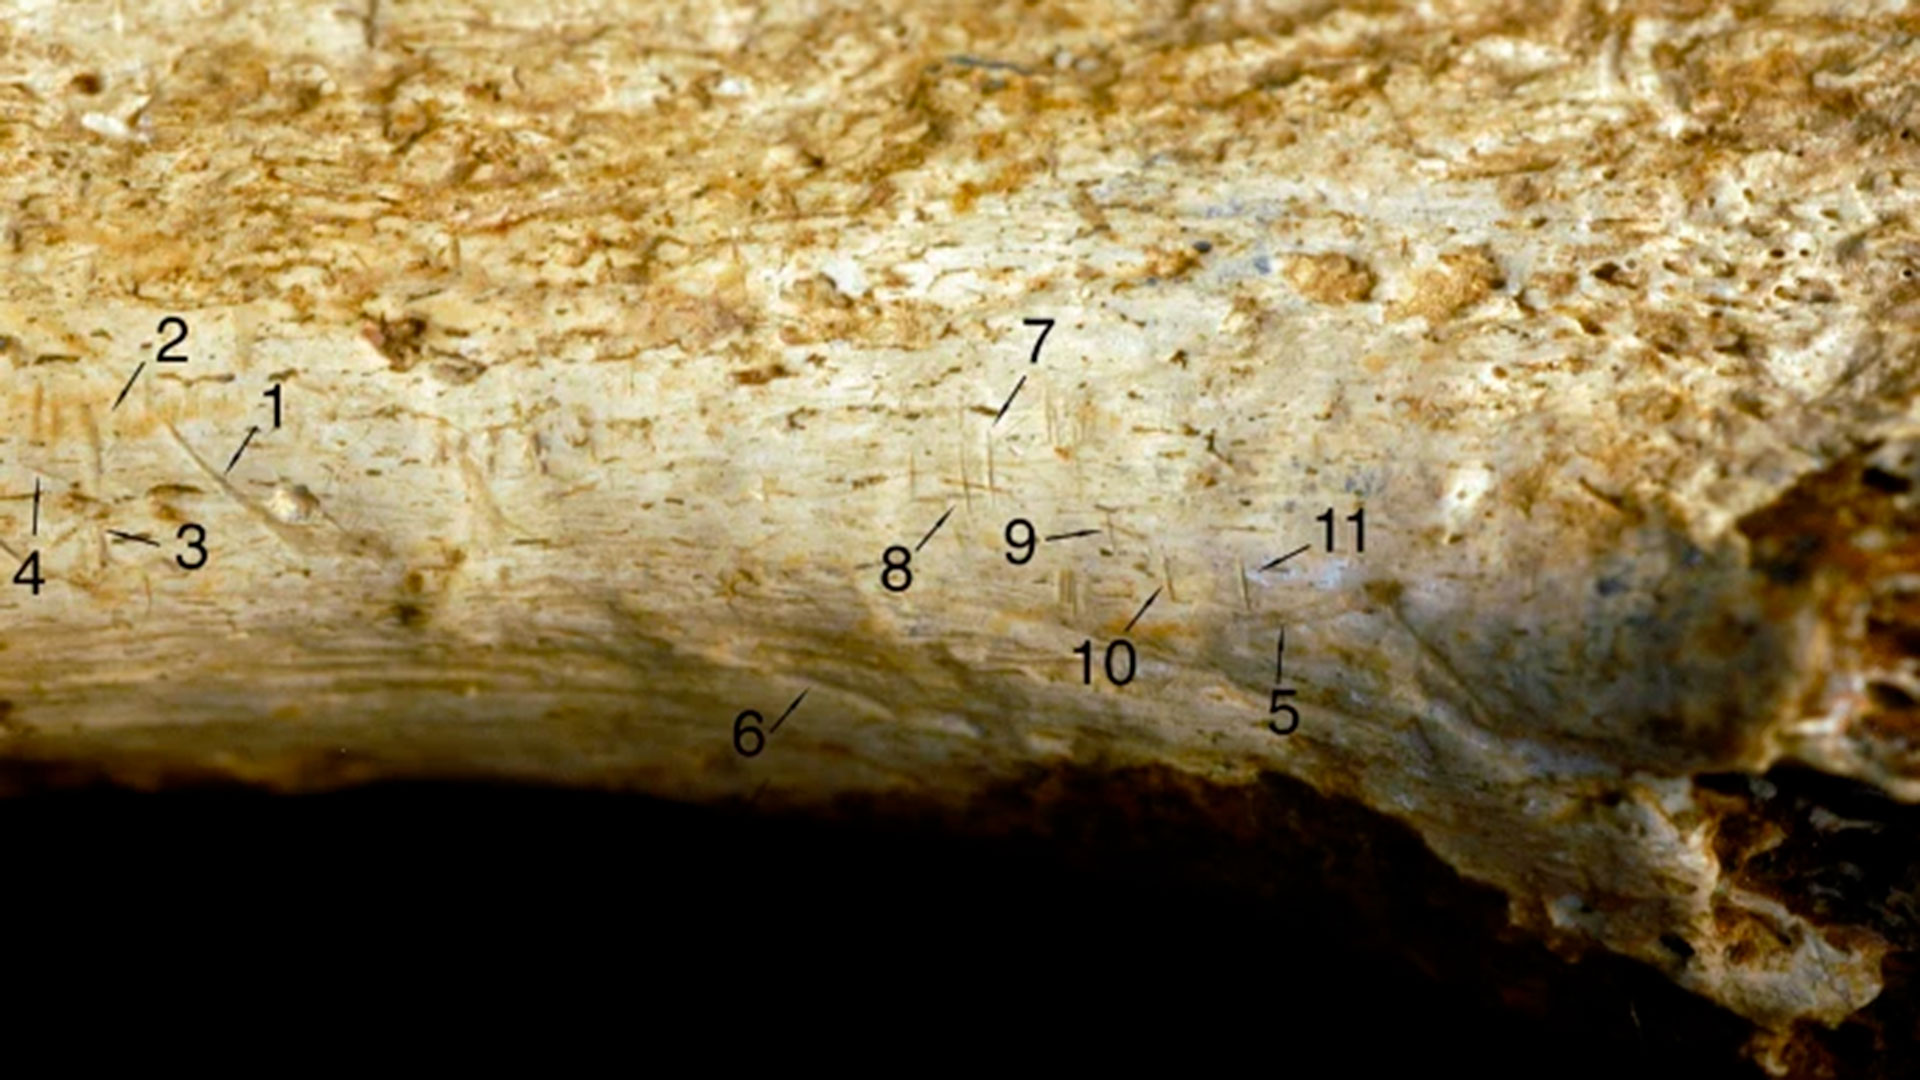 El paleoantropólogo Michael Pante, de la Universidad Estatal de Colorado, identificó nueve marcas como marcas de corte (1-4 y 7-11) y dos como marcas de dientes (5 y 6). (Jennifer Clark)